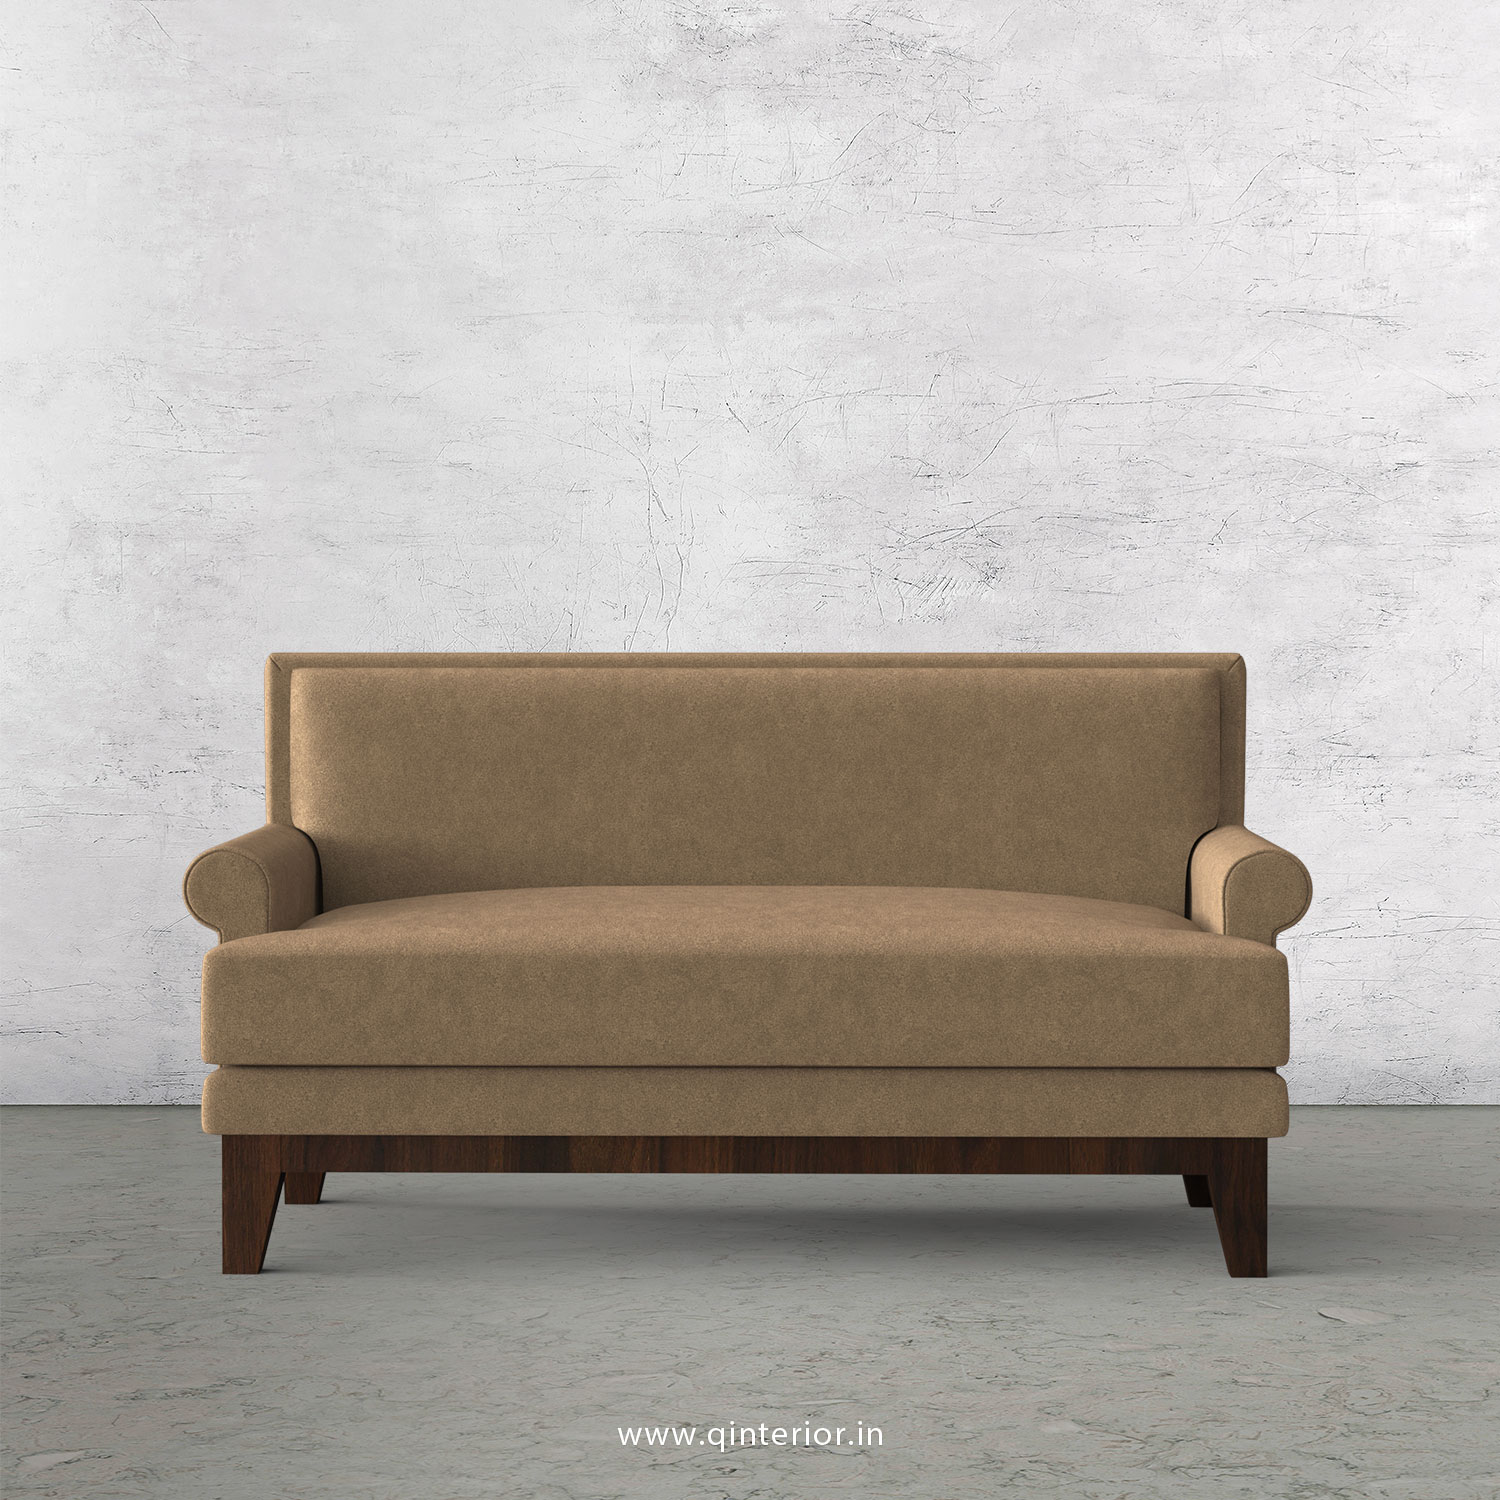 Aviana 2 Seater Sofa in Velvet Fabric - SFA001 VL03